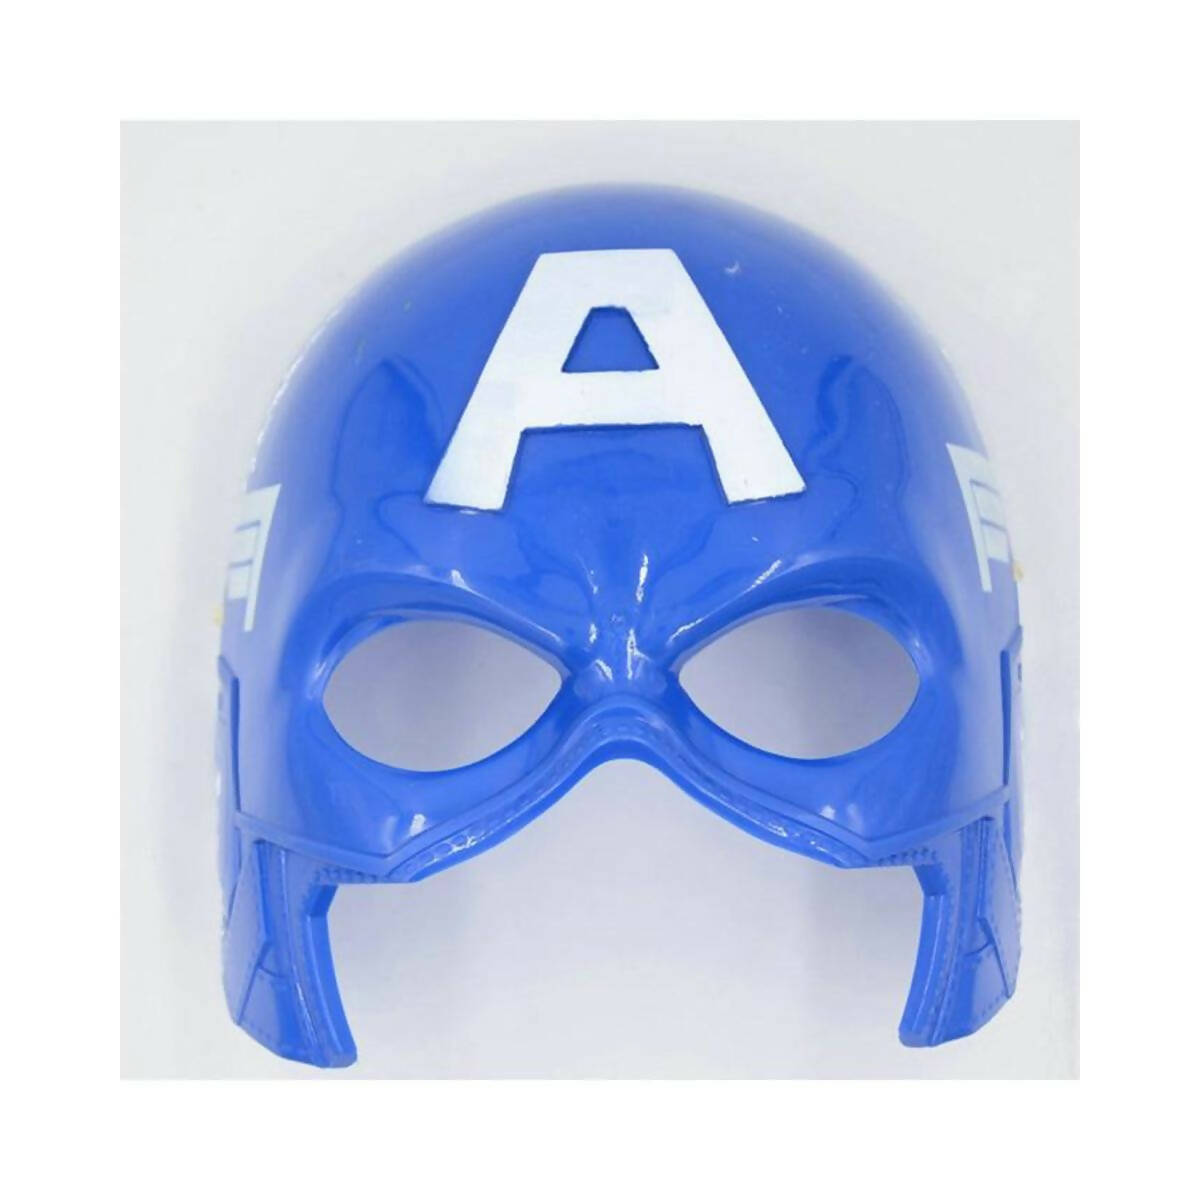 Captain America - Plastic Mask For Kids - Blue